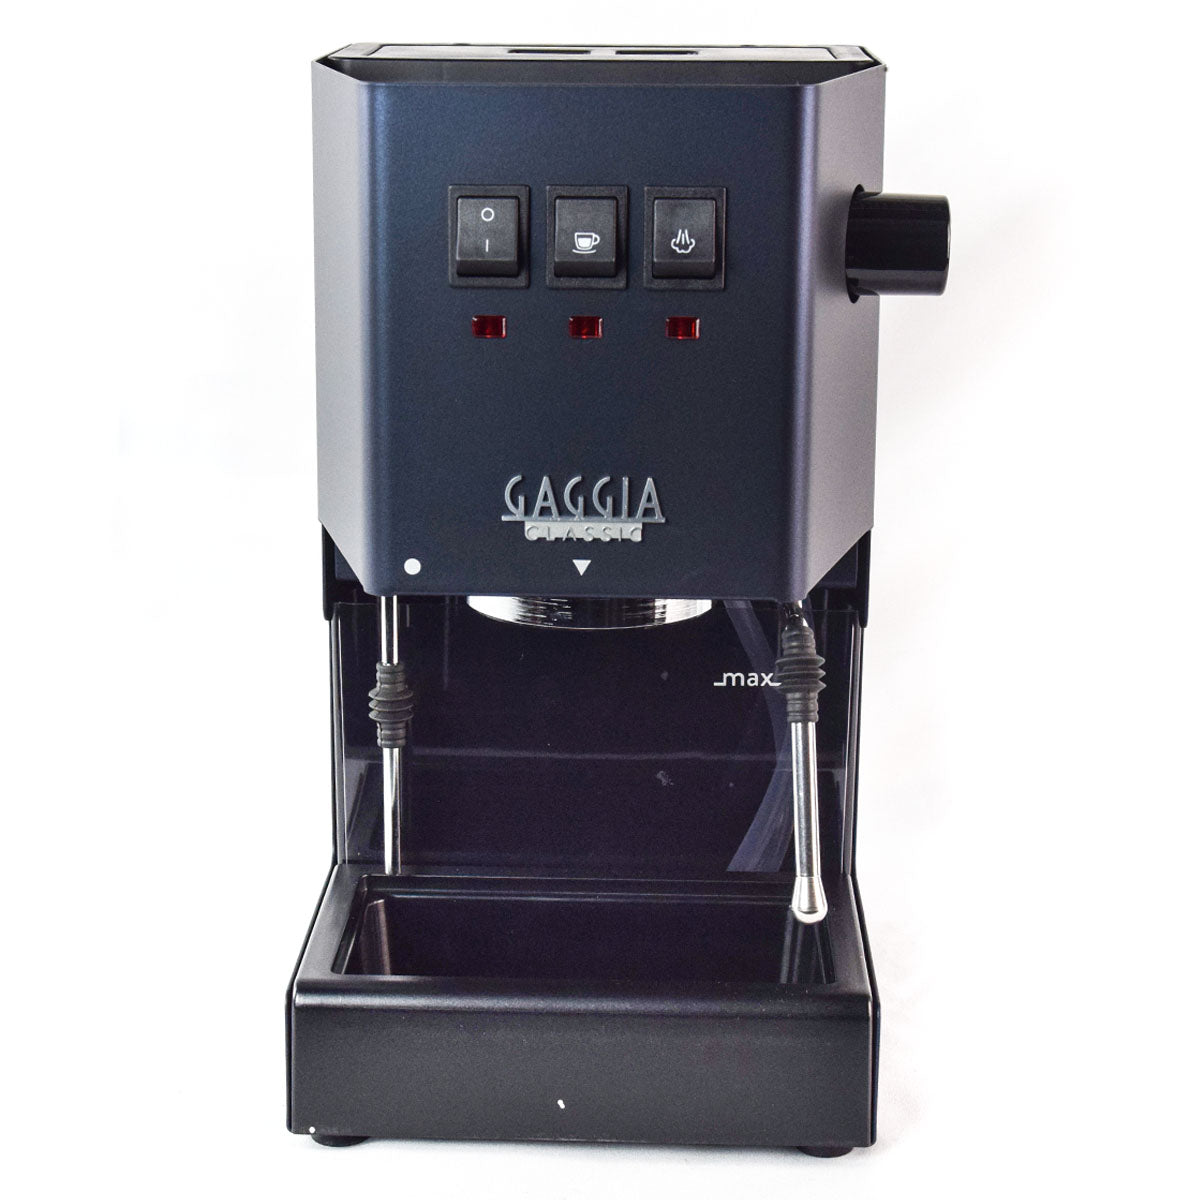 Gaggia Classic Pro Espresso Machine - Italian Espresso Machine - Manual Espresso machine - Residental Espresso Machine - Midnight blue Gaggia Classic Pro